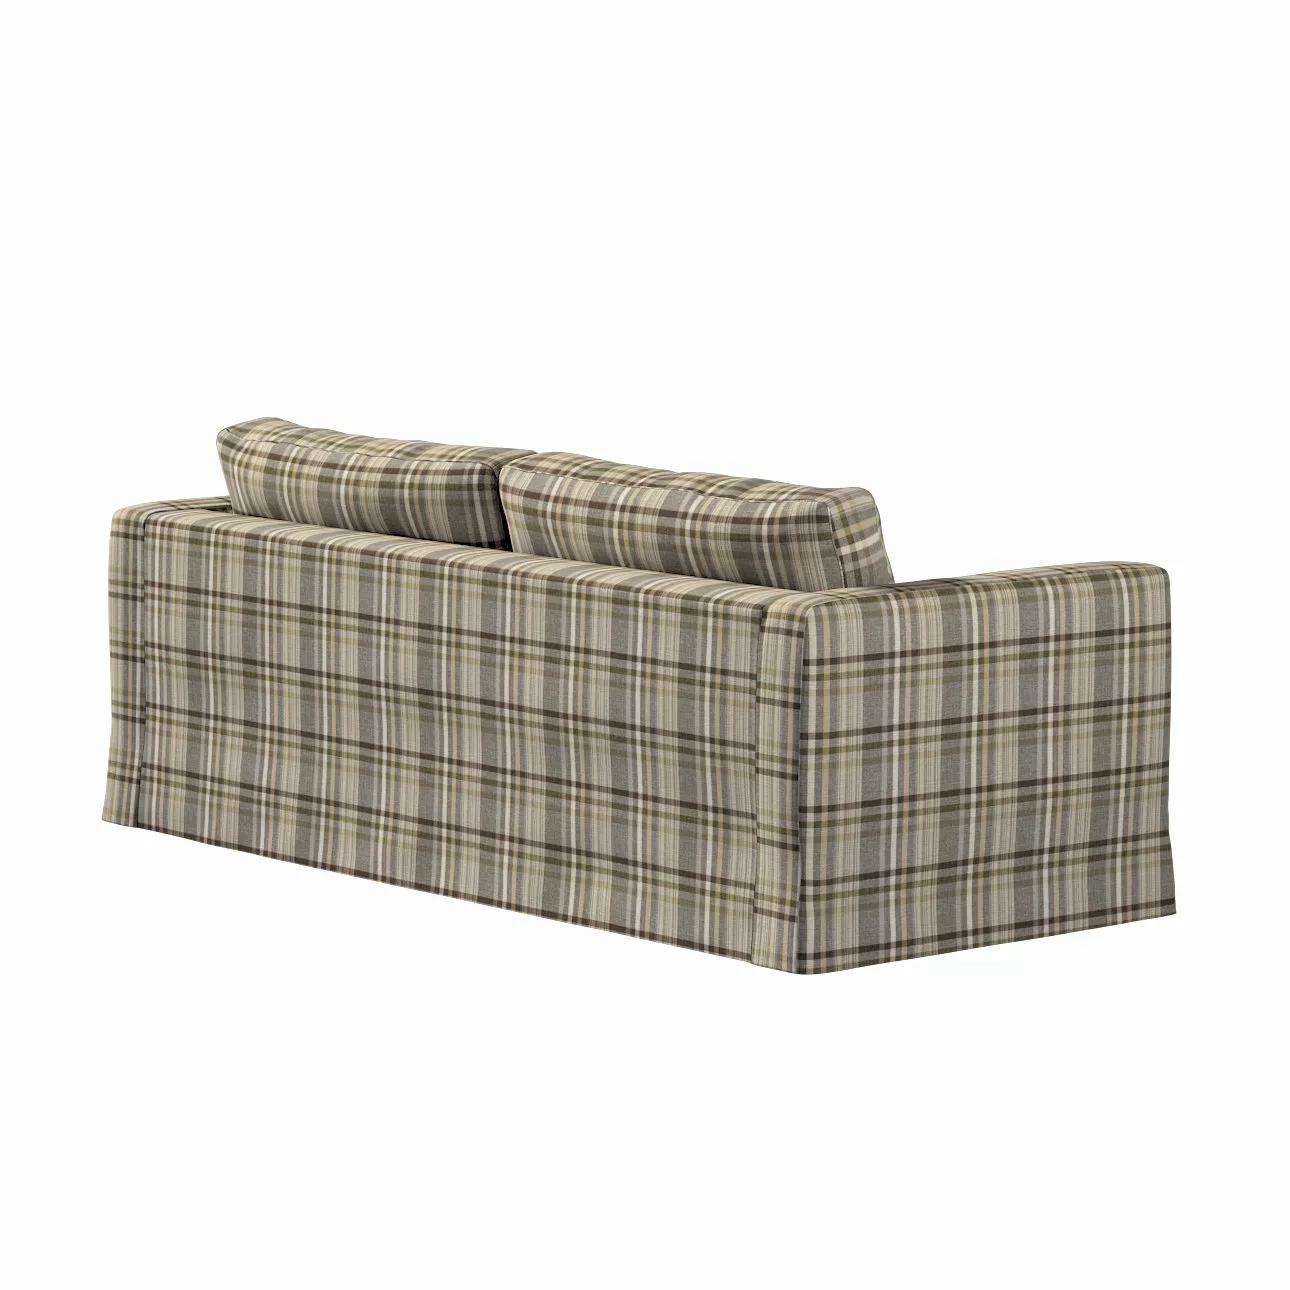 Bezug für Karlstad 3-Sitzer Sofa nicht ausklappbar, lang, braun- beige, Bez günstig online kaufen